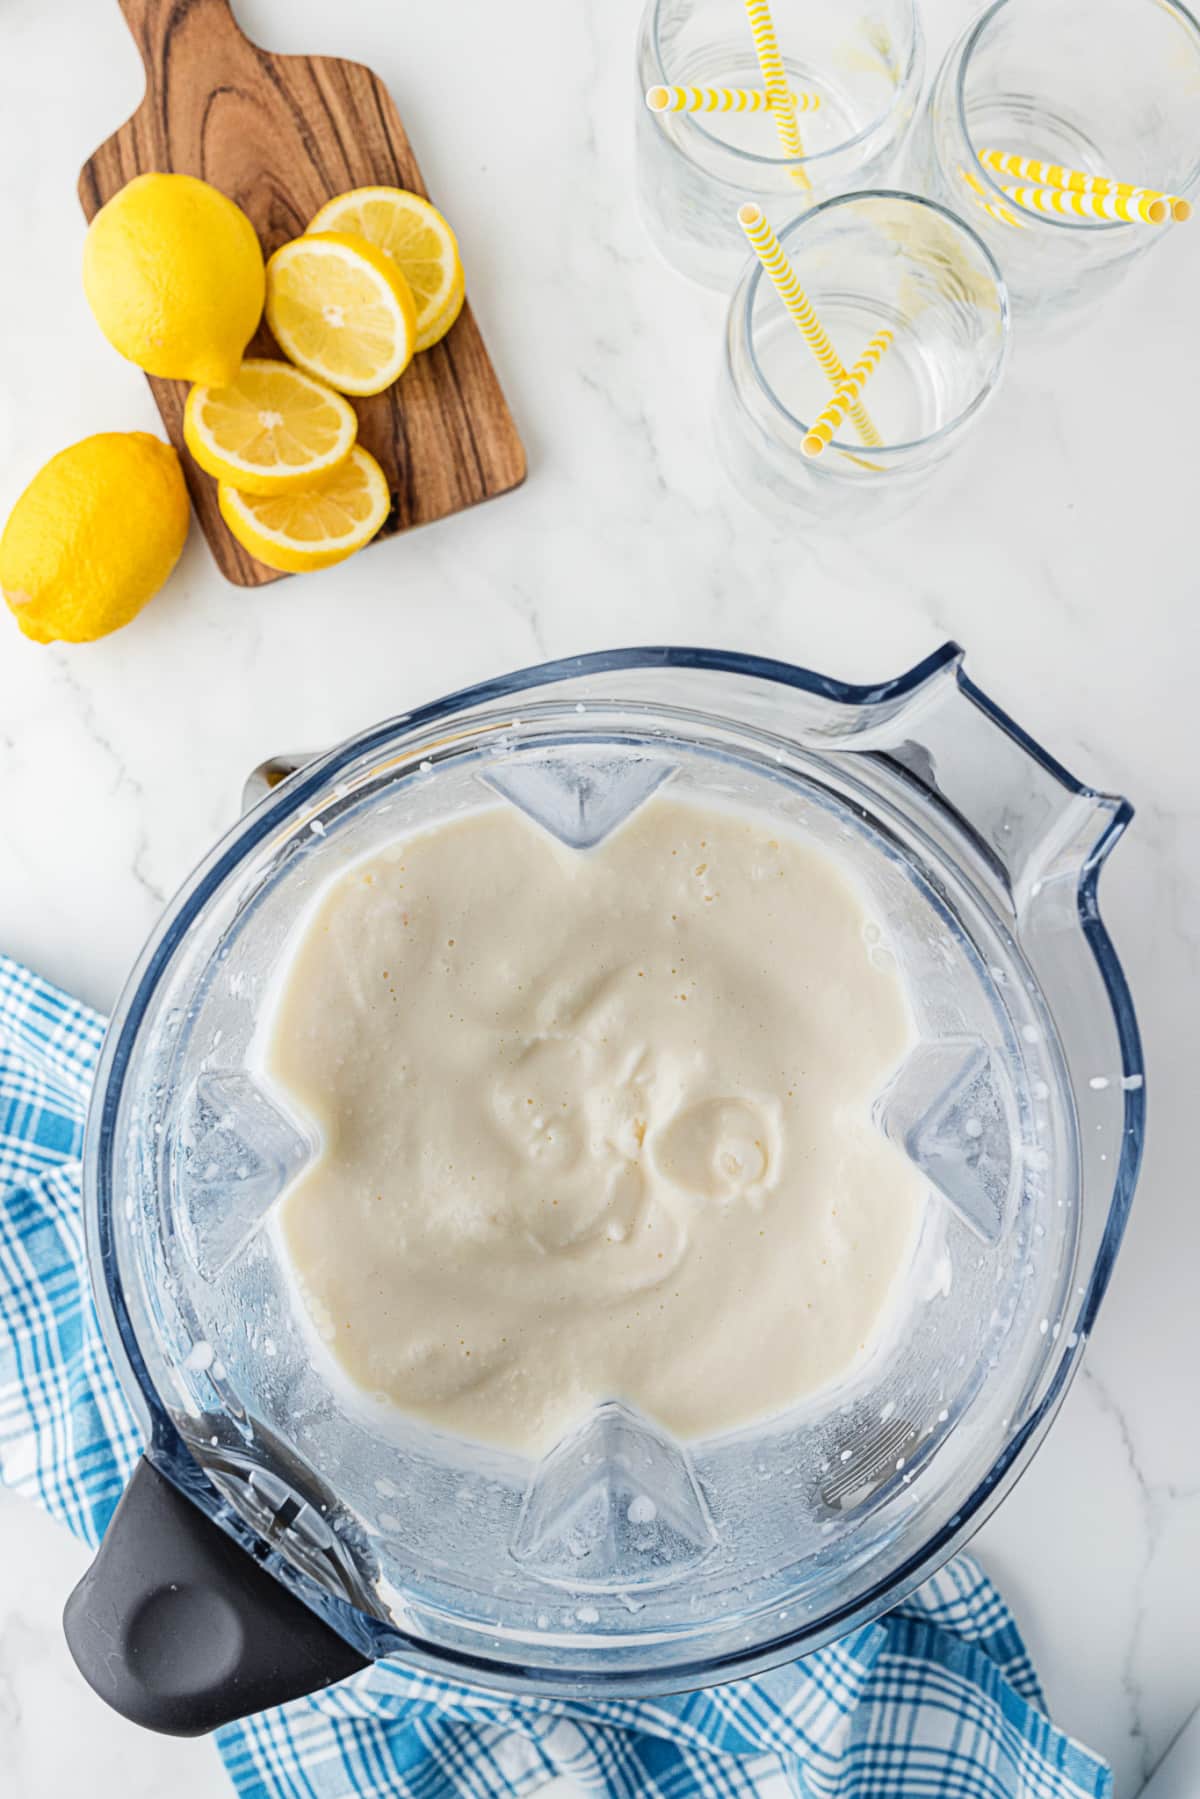 blended ice cream and lemons in a blender